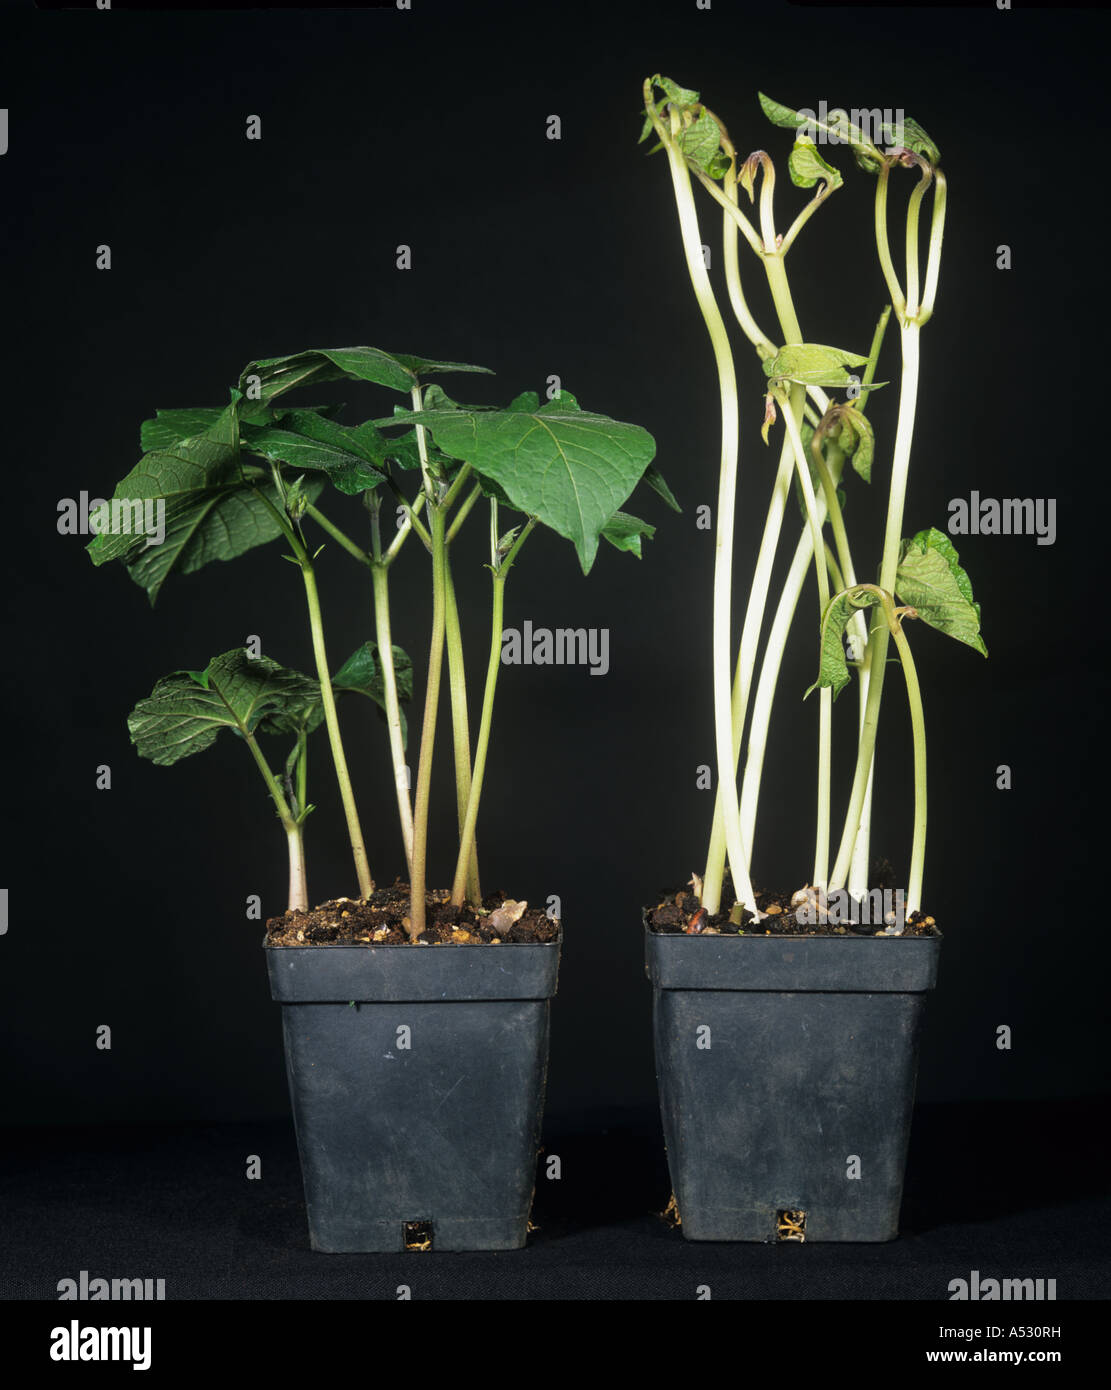 Runner Bean Pflanzen in das Licht im Vergleich zu denen in der Dunkelheit gewachsen Stockfoto